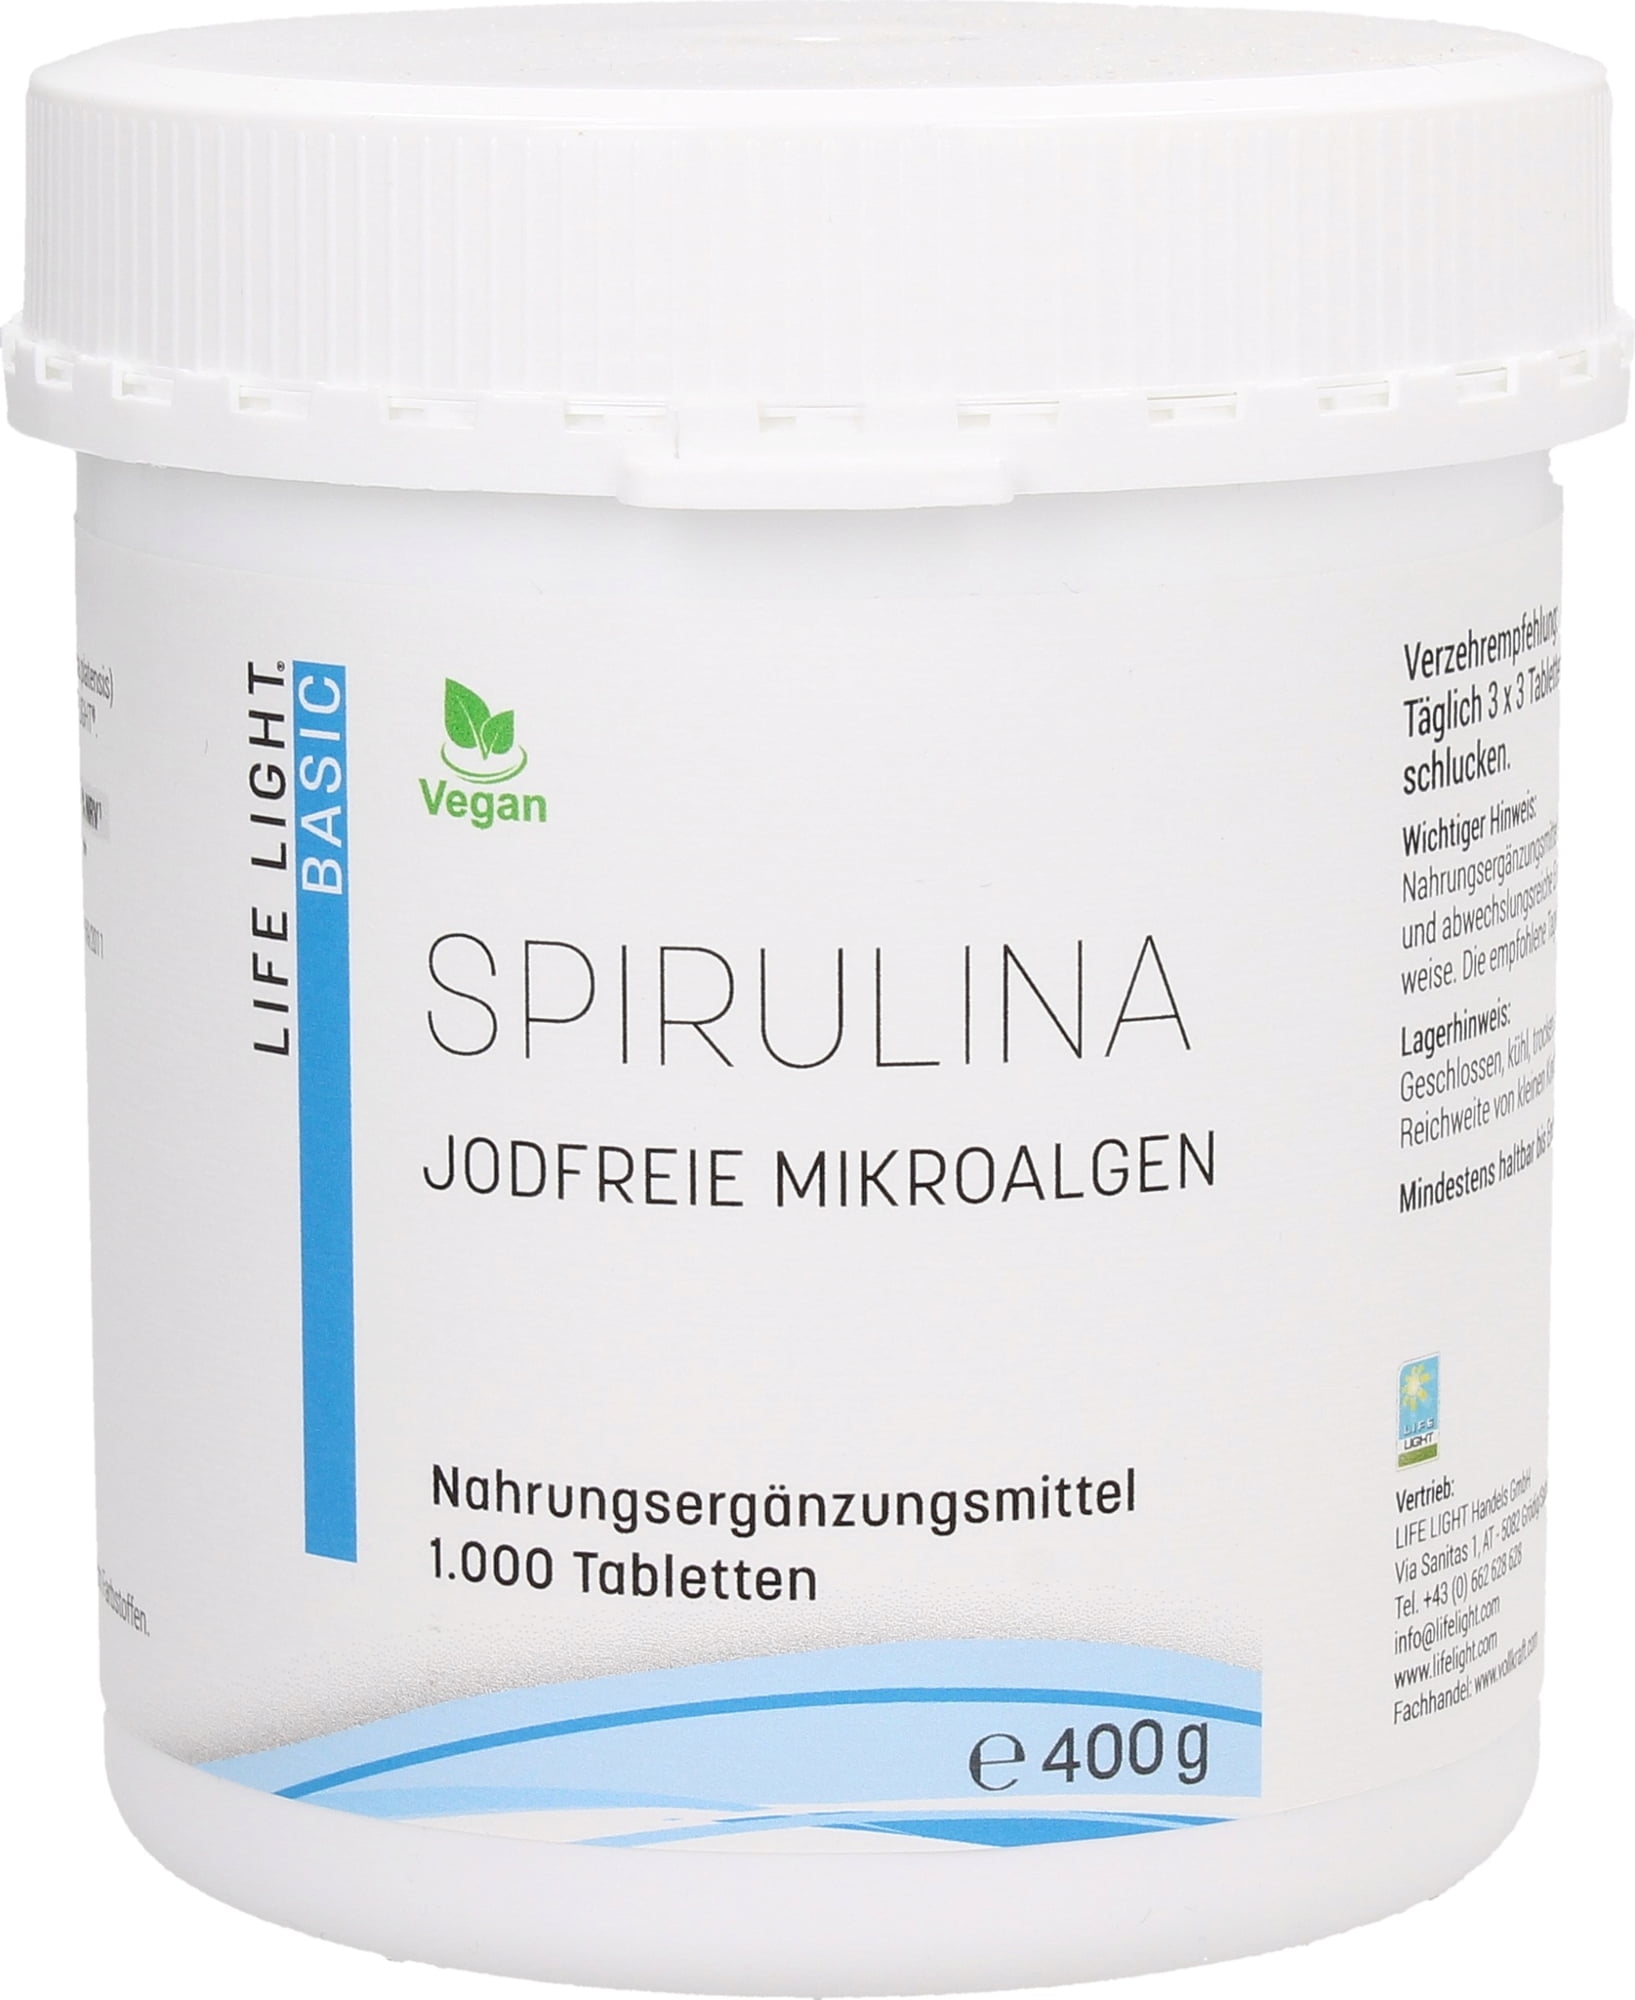 Life Light Spirulina Tabletten - 1.000 Tabletten